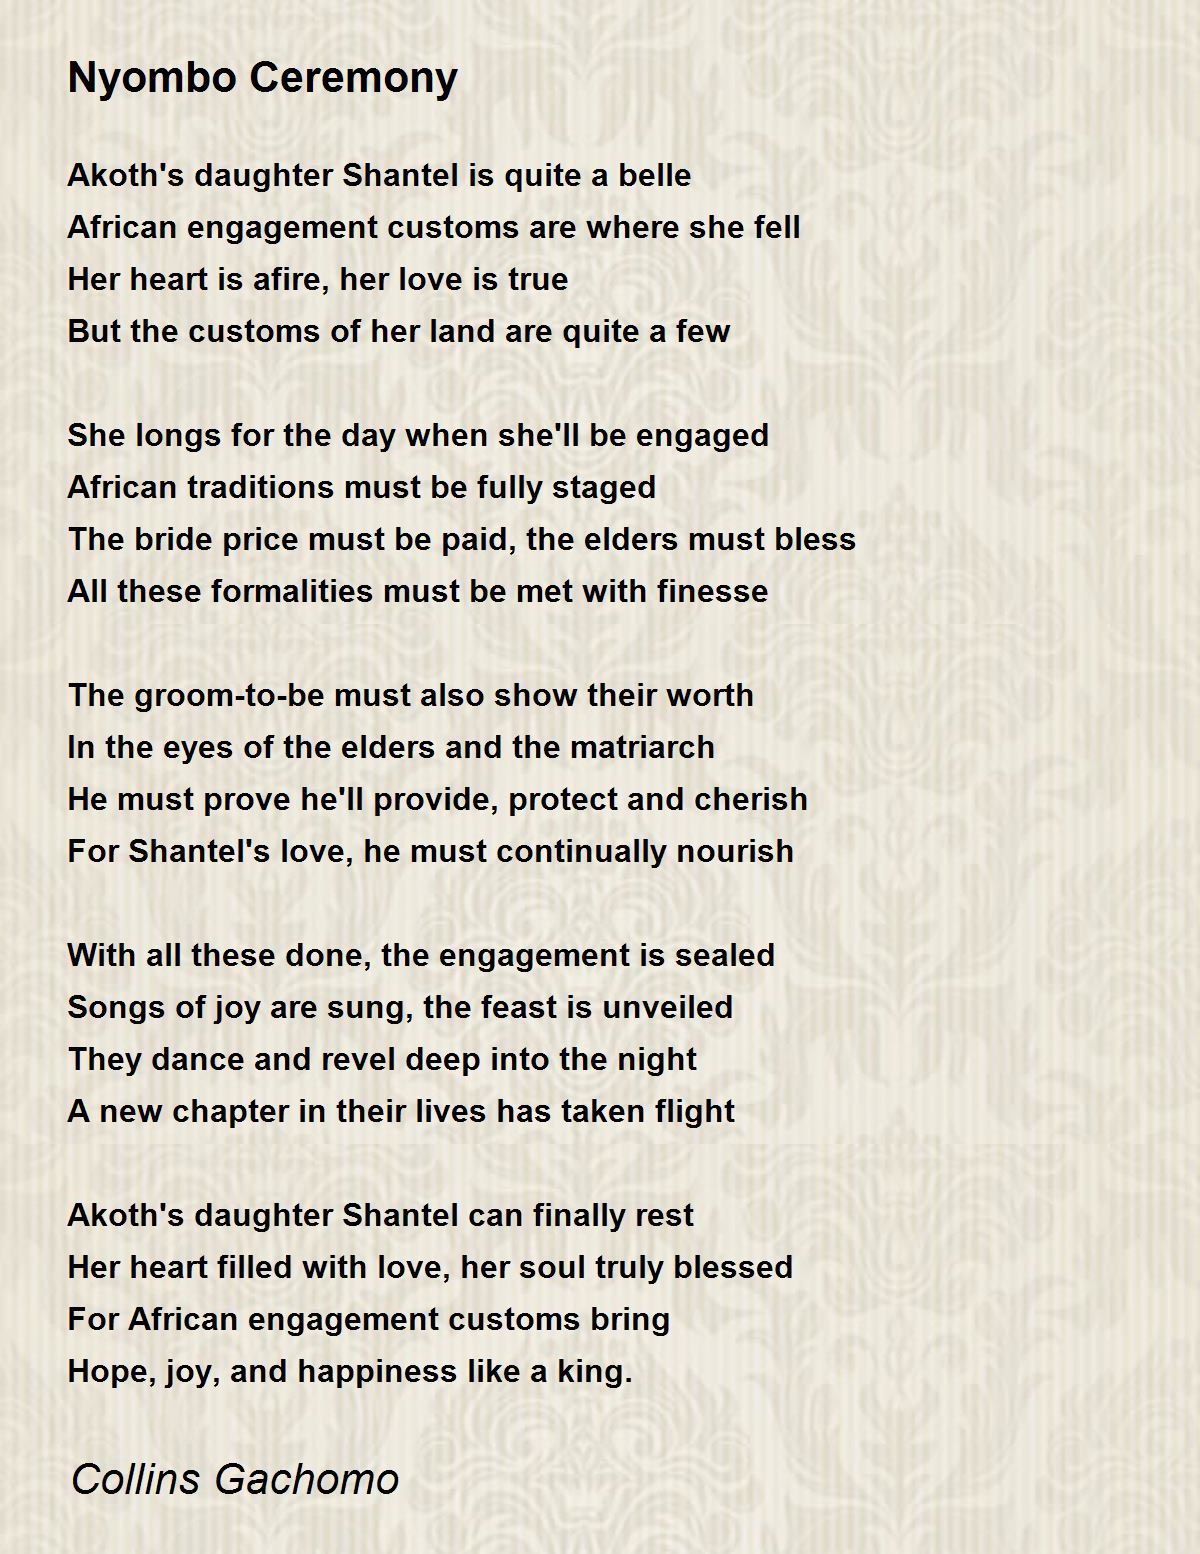 True Love - True Love Poem by Collins Gachomo